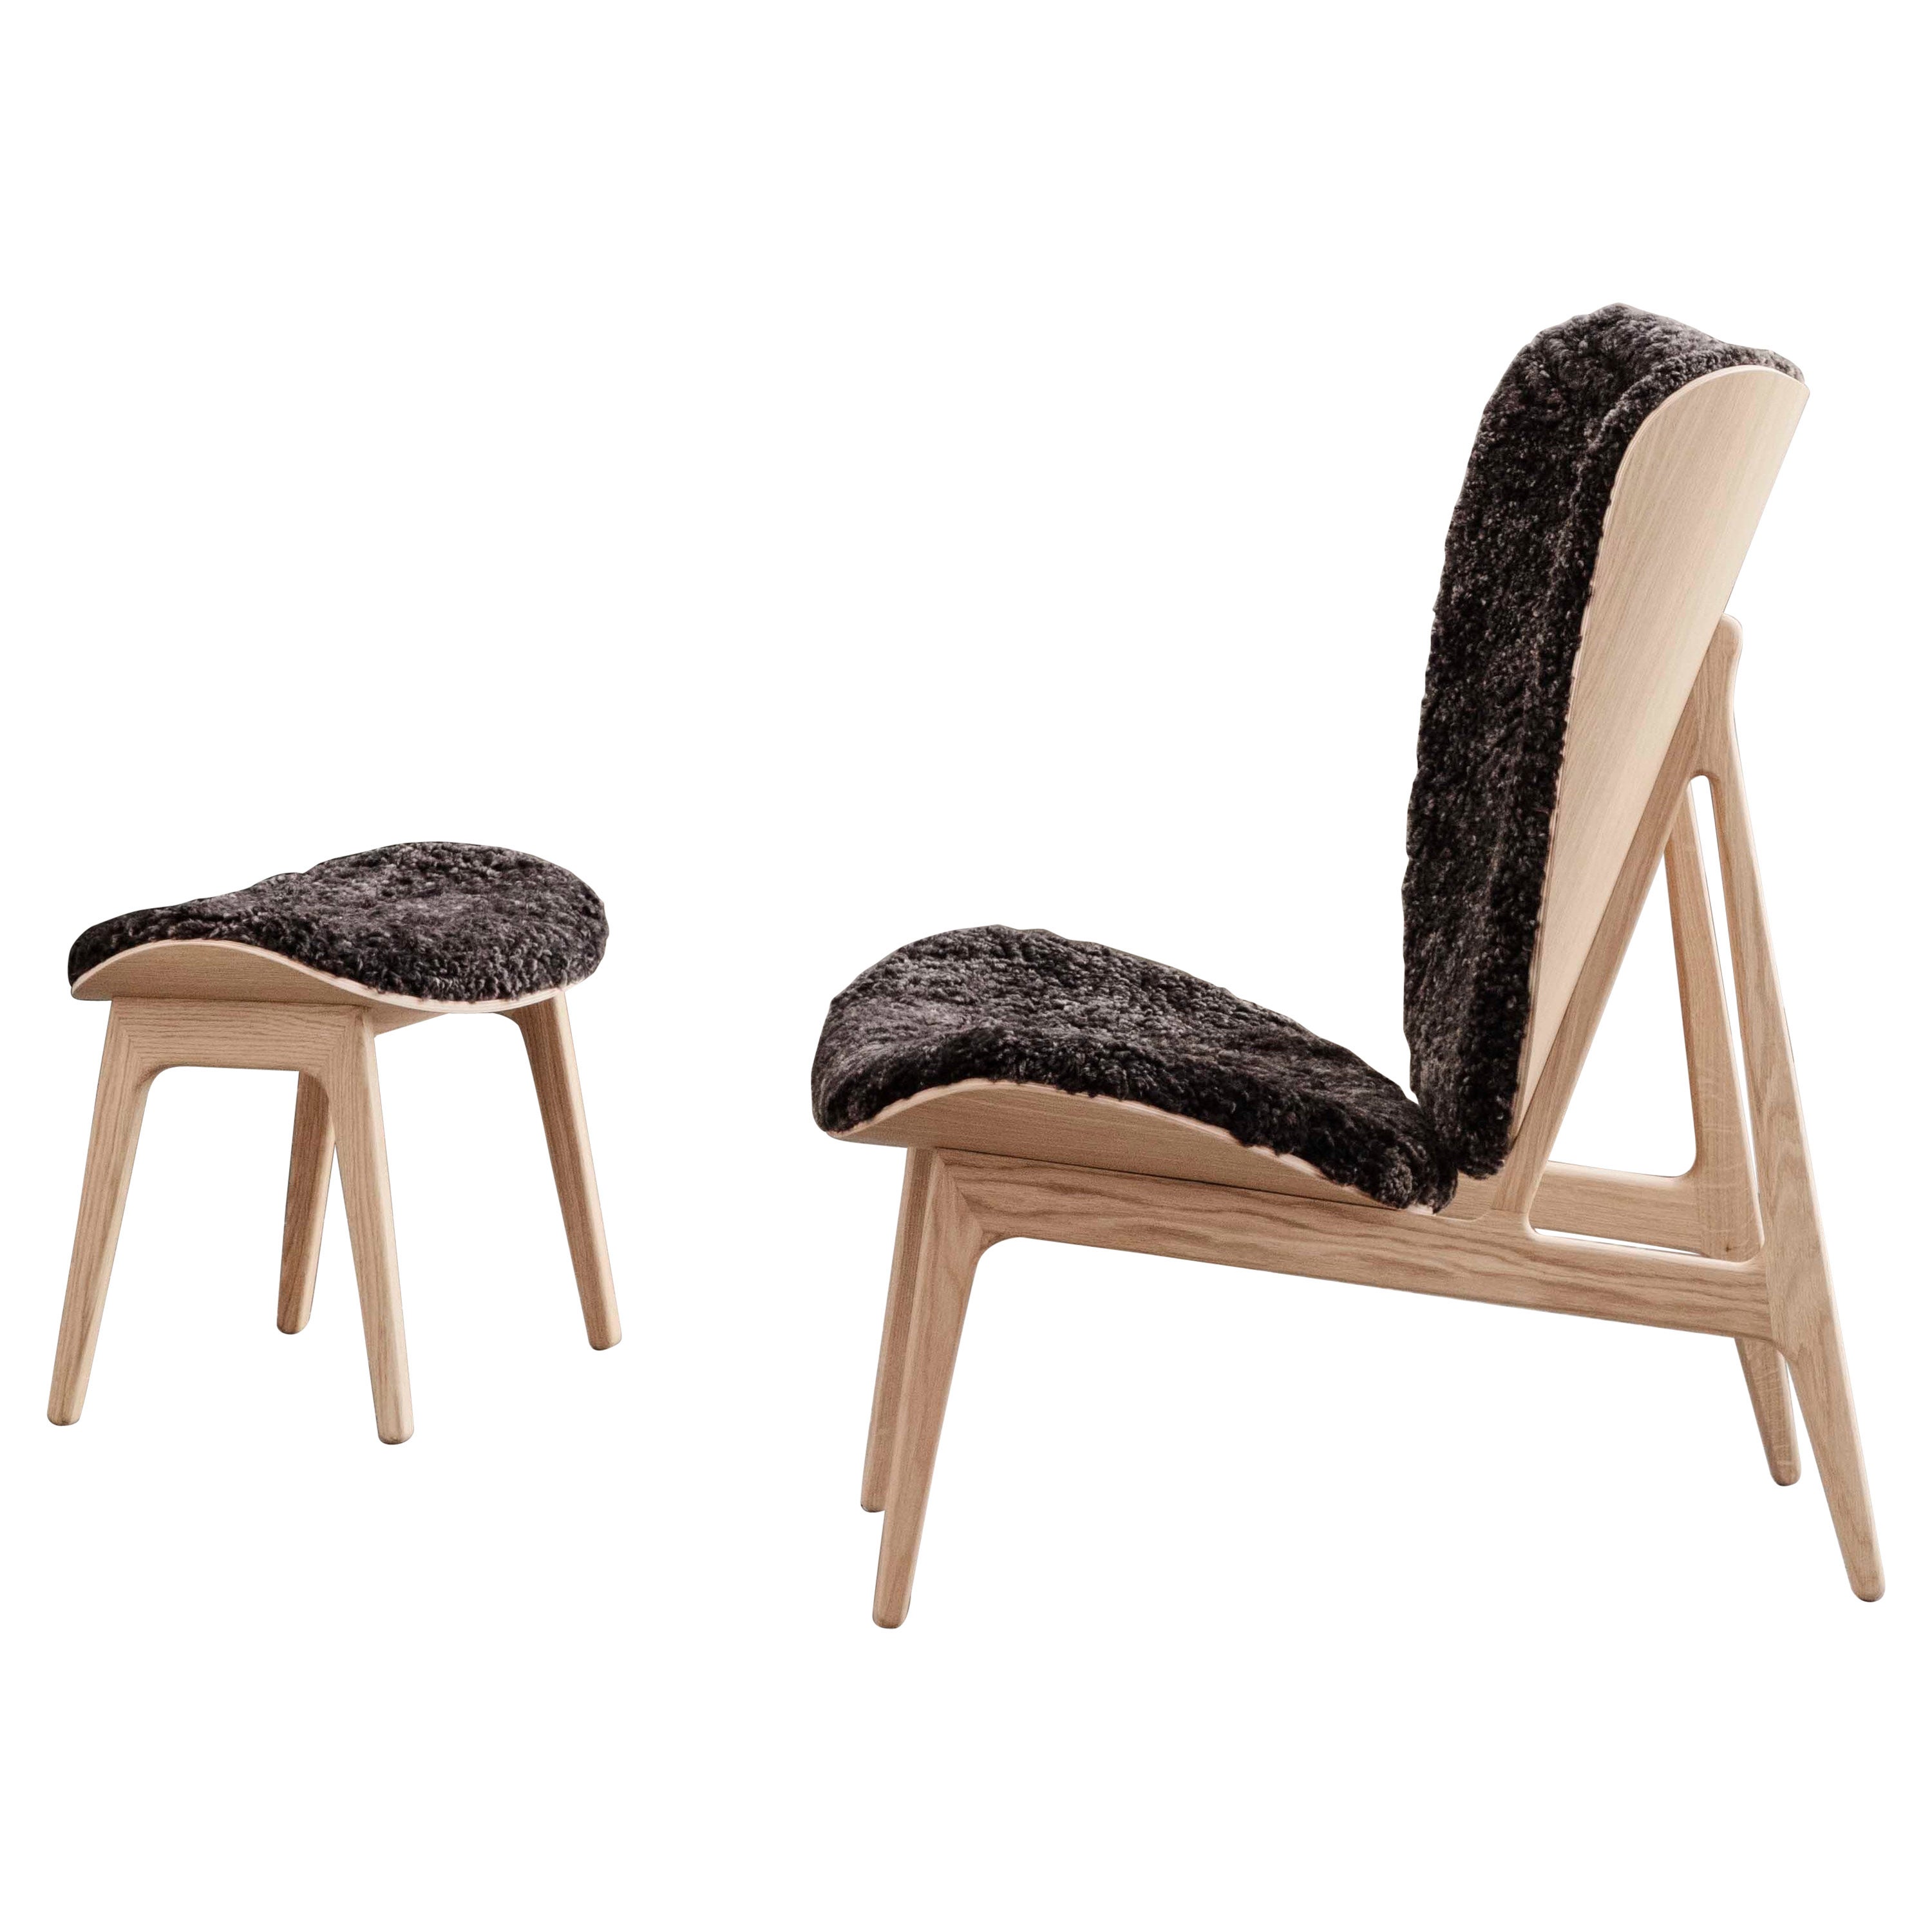 Chaise longue et tabouret 'Elephant' en chêne naturel et peau de mouton par Norr11